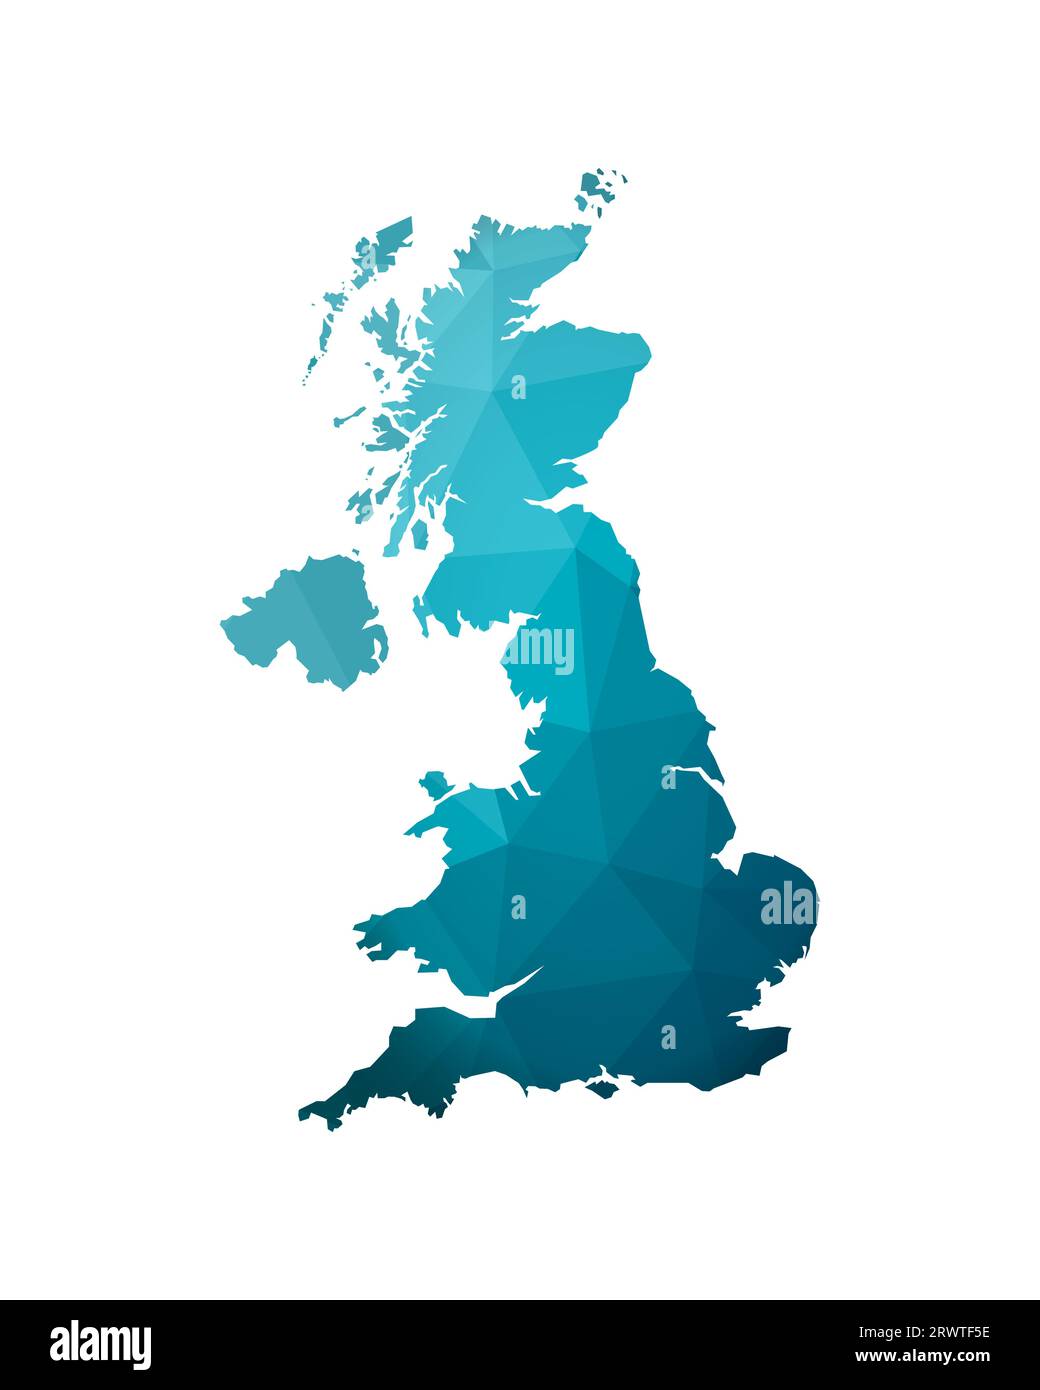 Illustrazione vettoriale isolata con forma mappa semplificata blu sfumato del Regno Unito di Gran Bretagna e Irlanda del Nord (Regno Unito). Poligonale geometrica Illustrazione Vettoriale